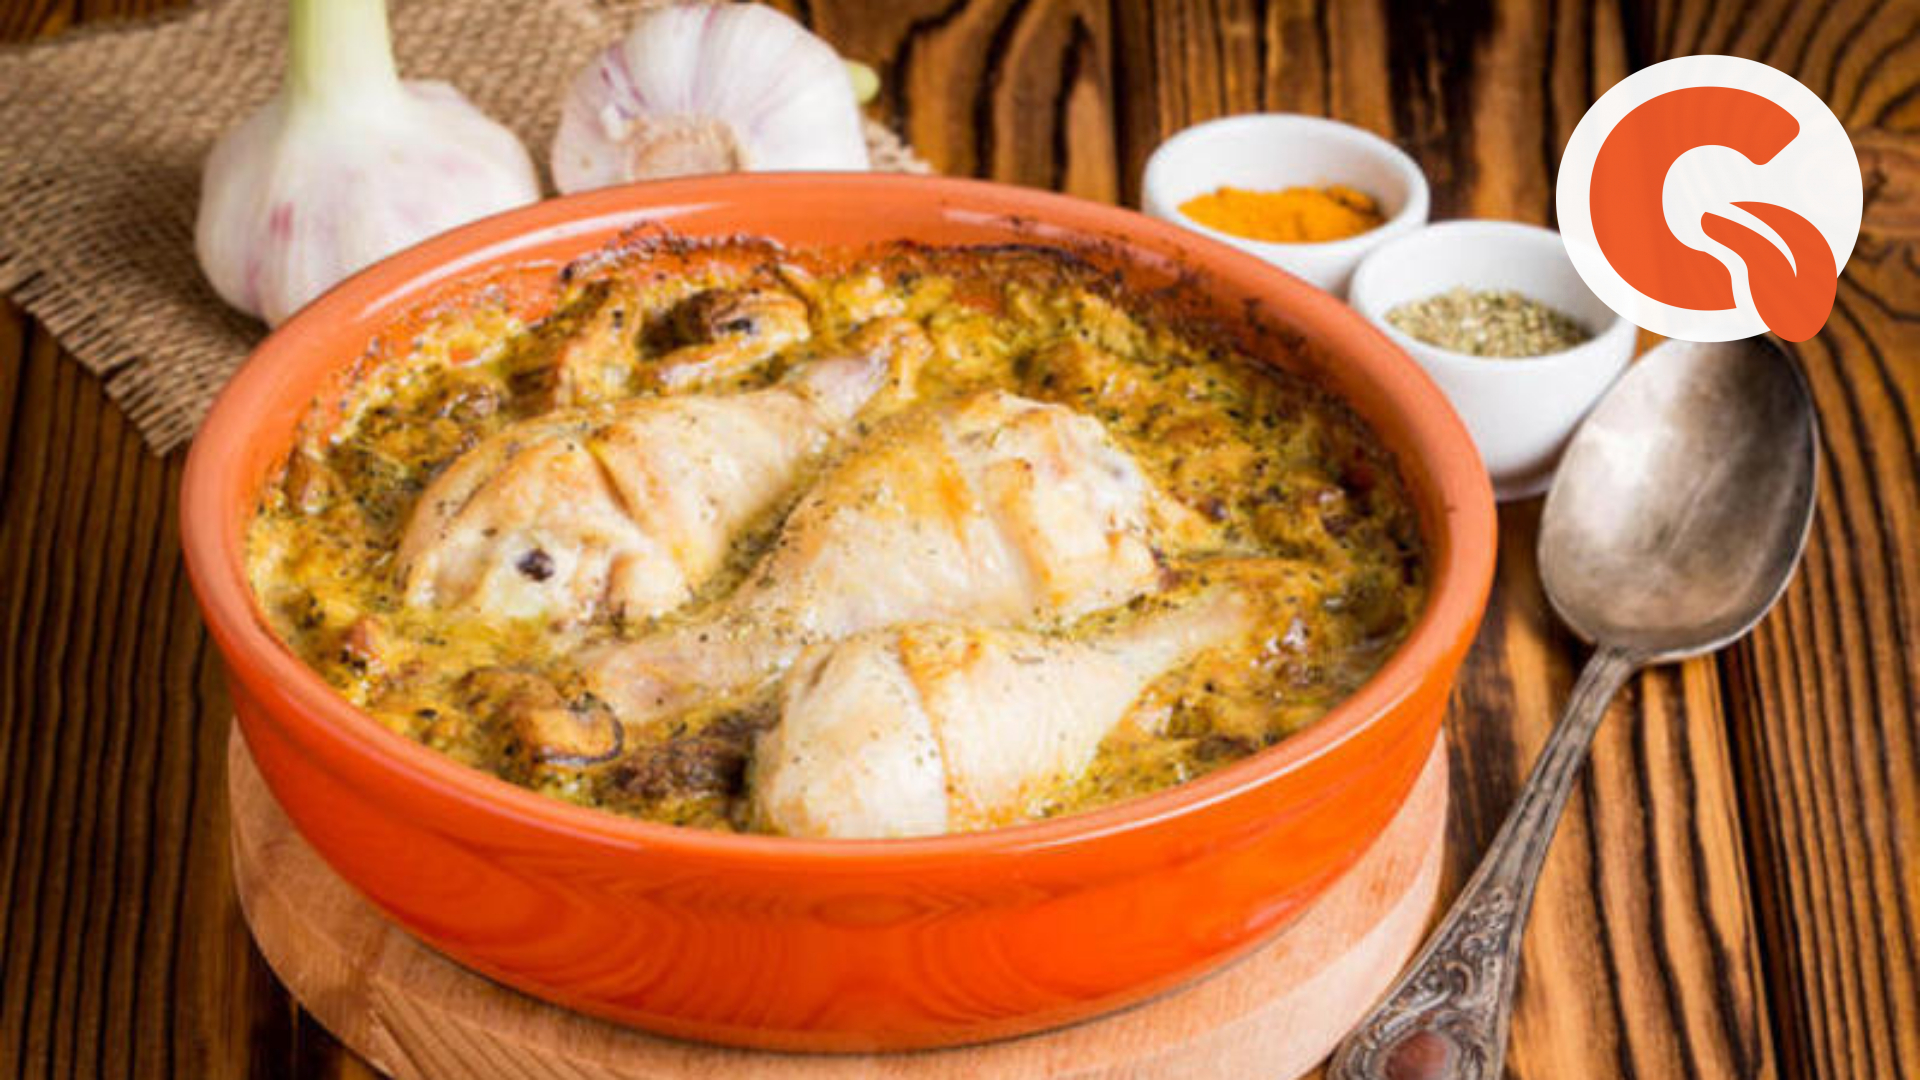 Курица по-еврейски с луком и содой в сковороде. Кушанье под соусом 4 буквы. Рыба по-еврейски рецепт на сковороде с луком. Второе из курицы рецепты с фото простые.